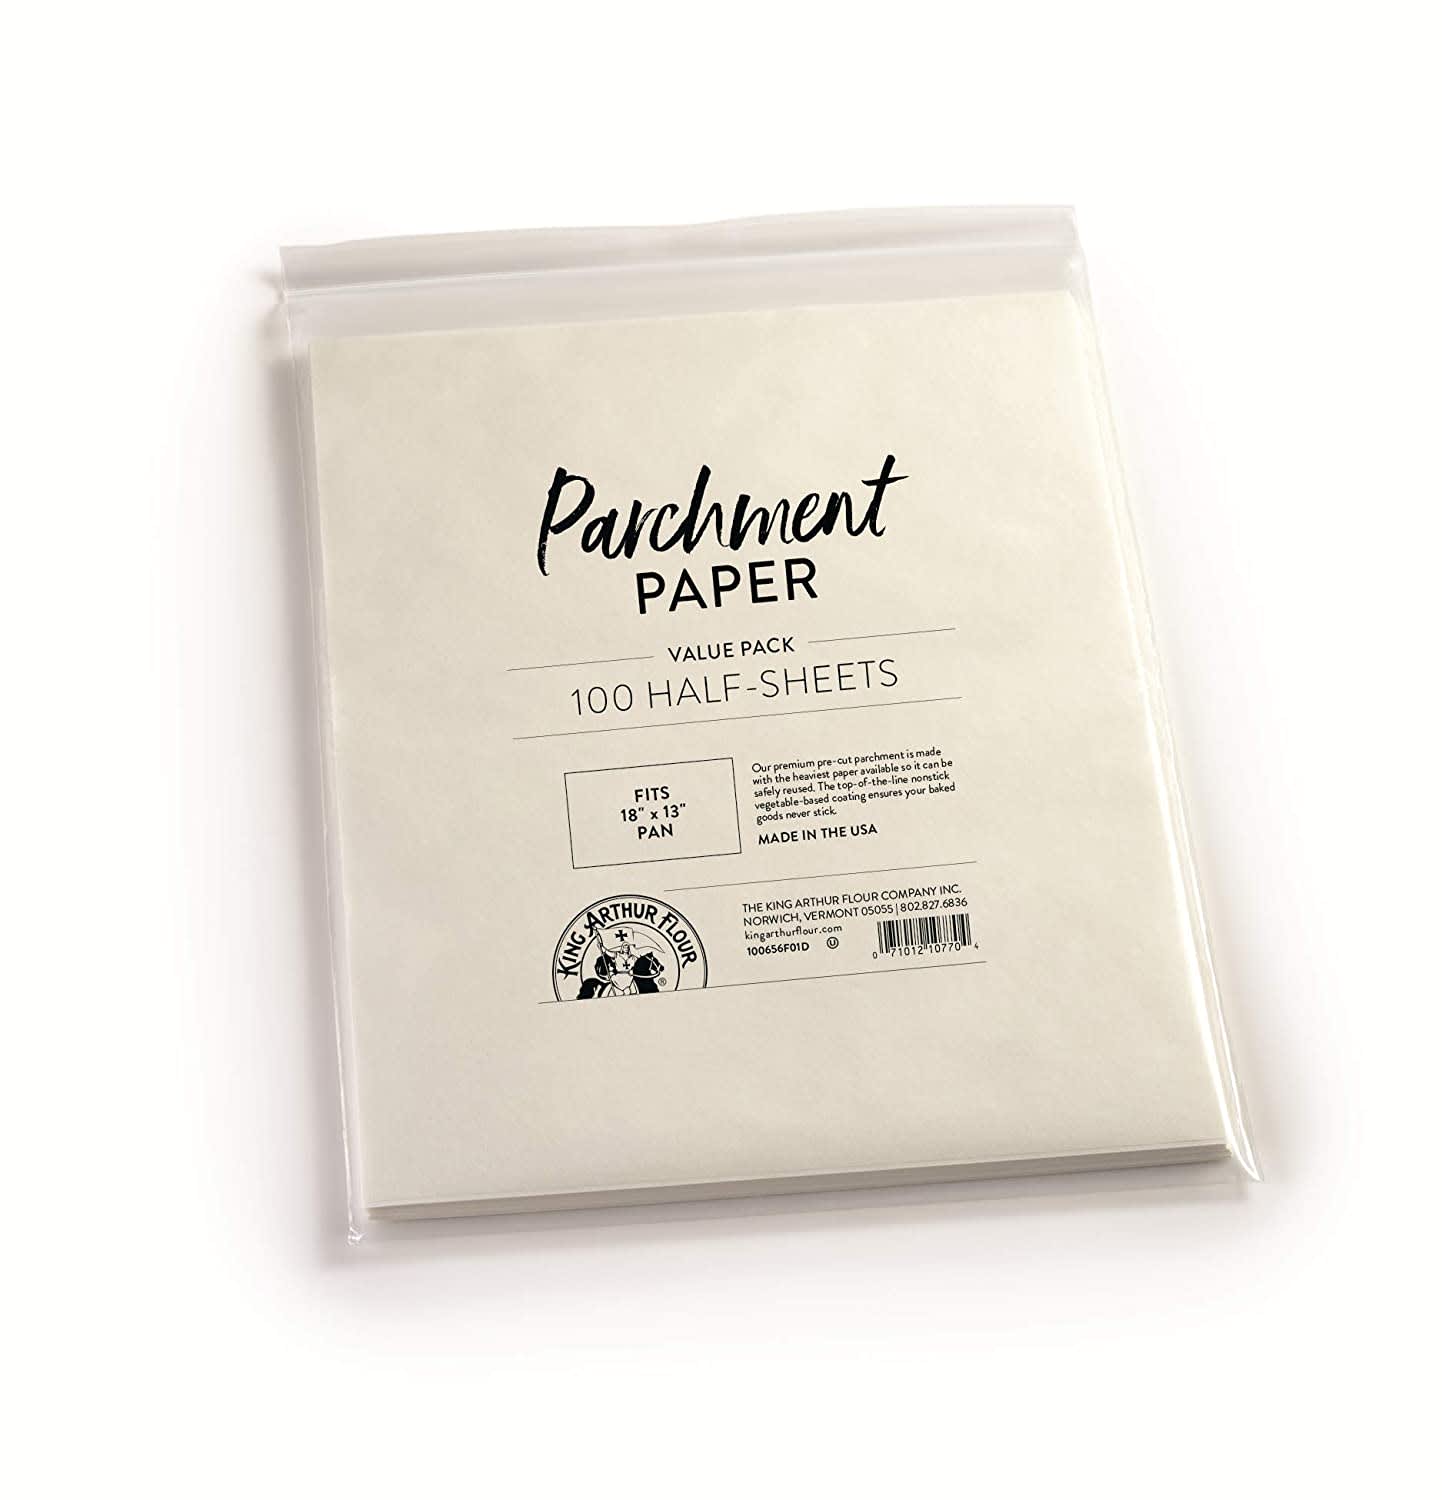 Best Parchment Paper - King Arthur Parchment Paper Review